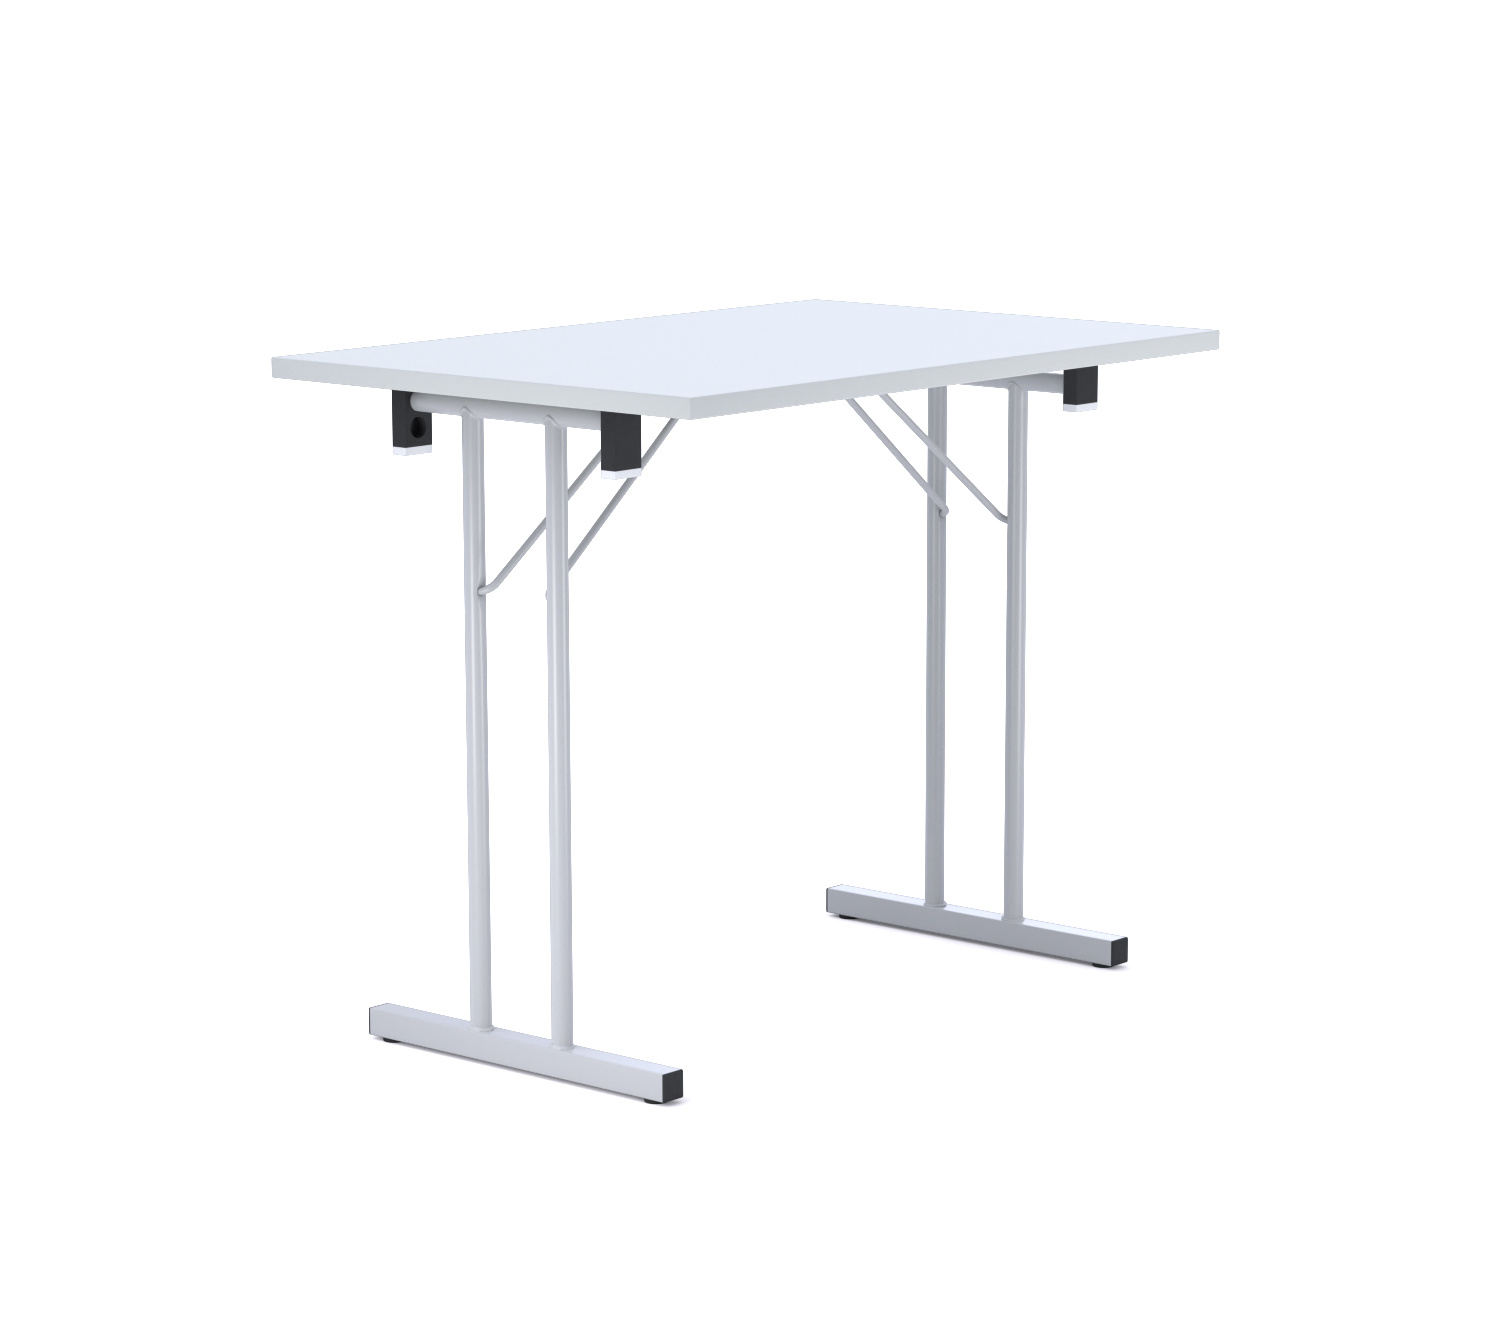 Standard Folding Table 4680-58 Konferenztisch, 90 x 60 cm